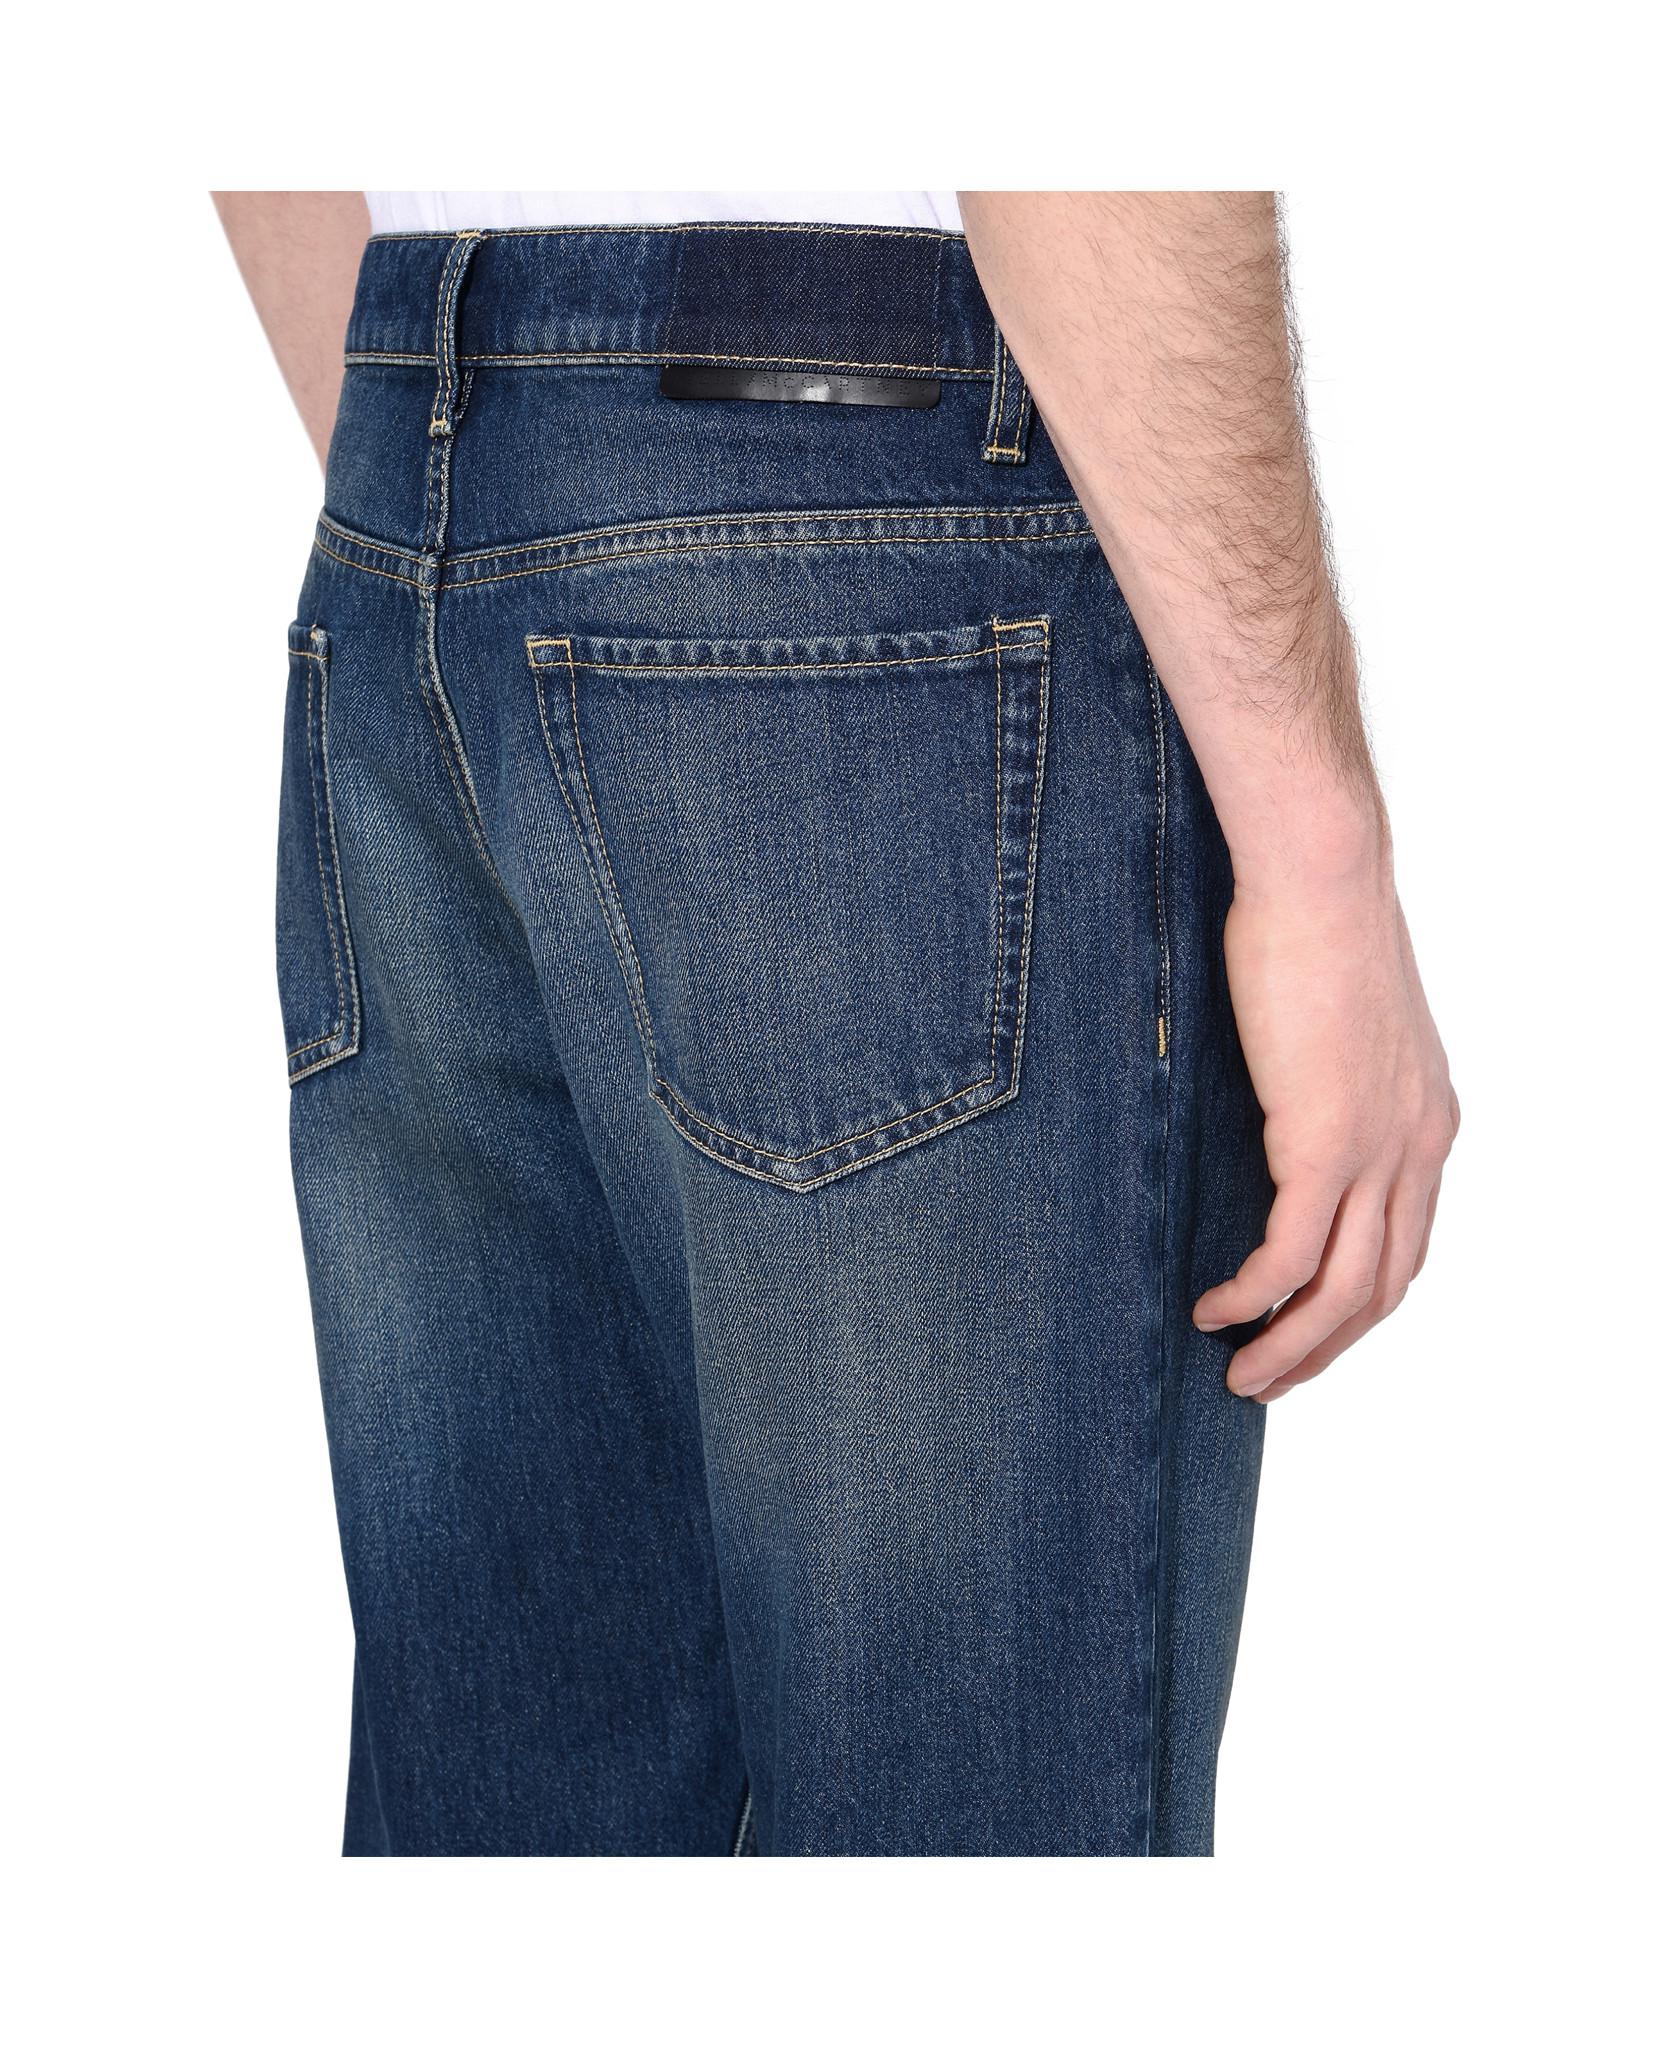 denzel levi jeans